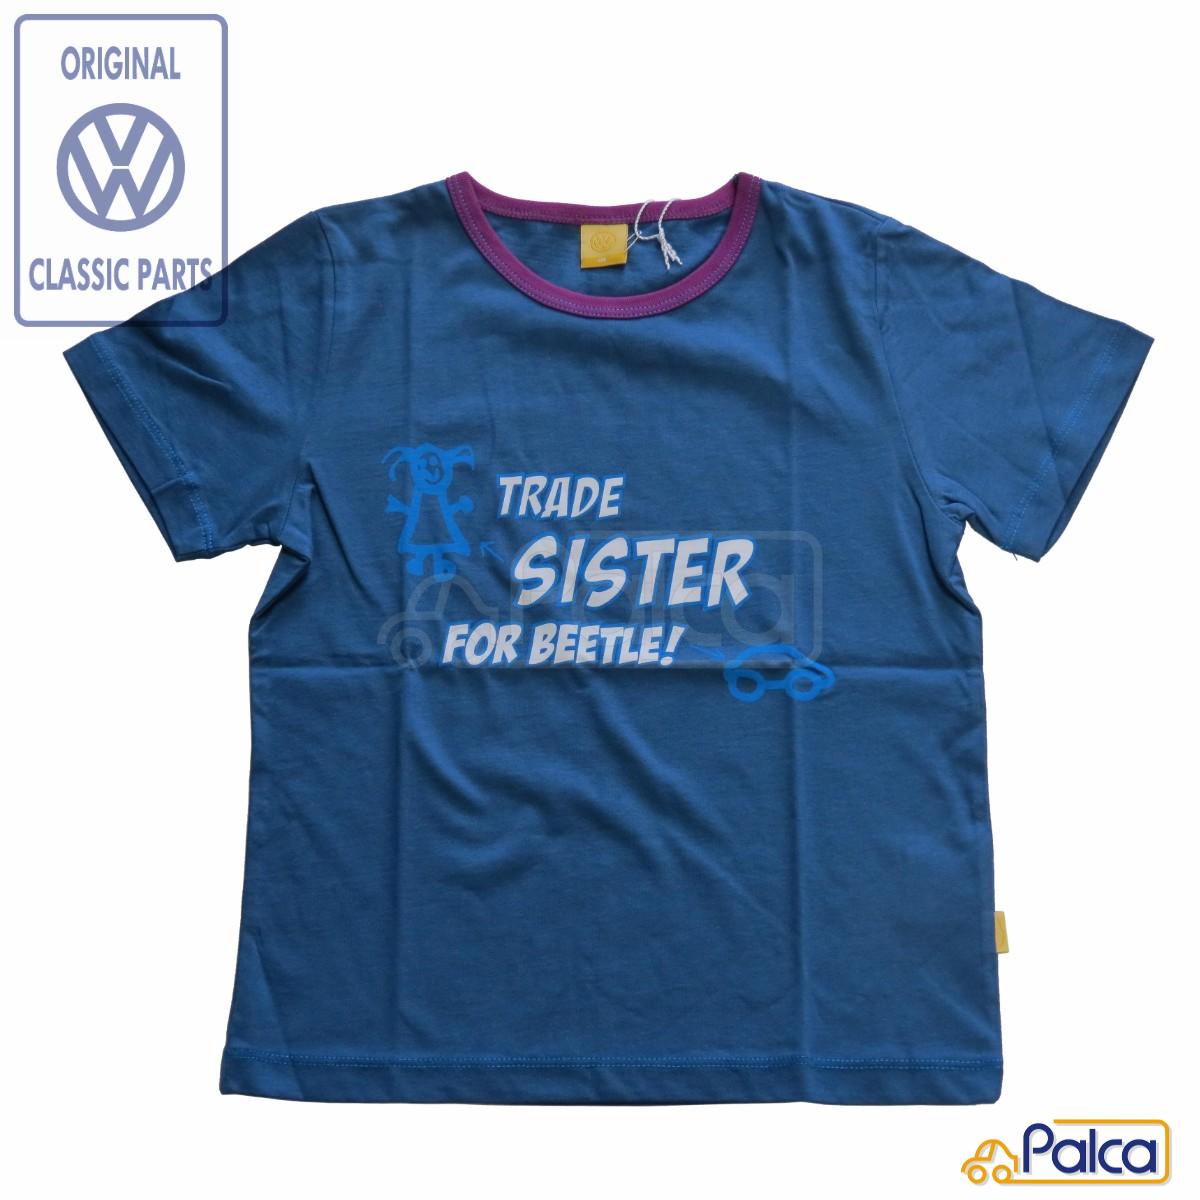 フォルクスワーゲン/VW Tシャツ/T-シャツ TRADE SISTER FOR BEETLE/ビートル サイズ116 子供/キッズ用 純正品